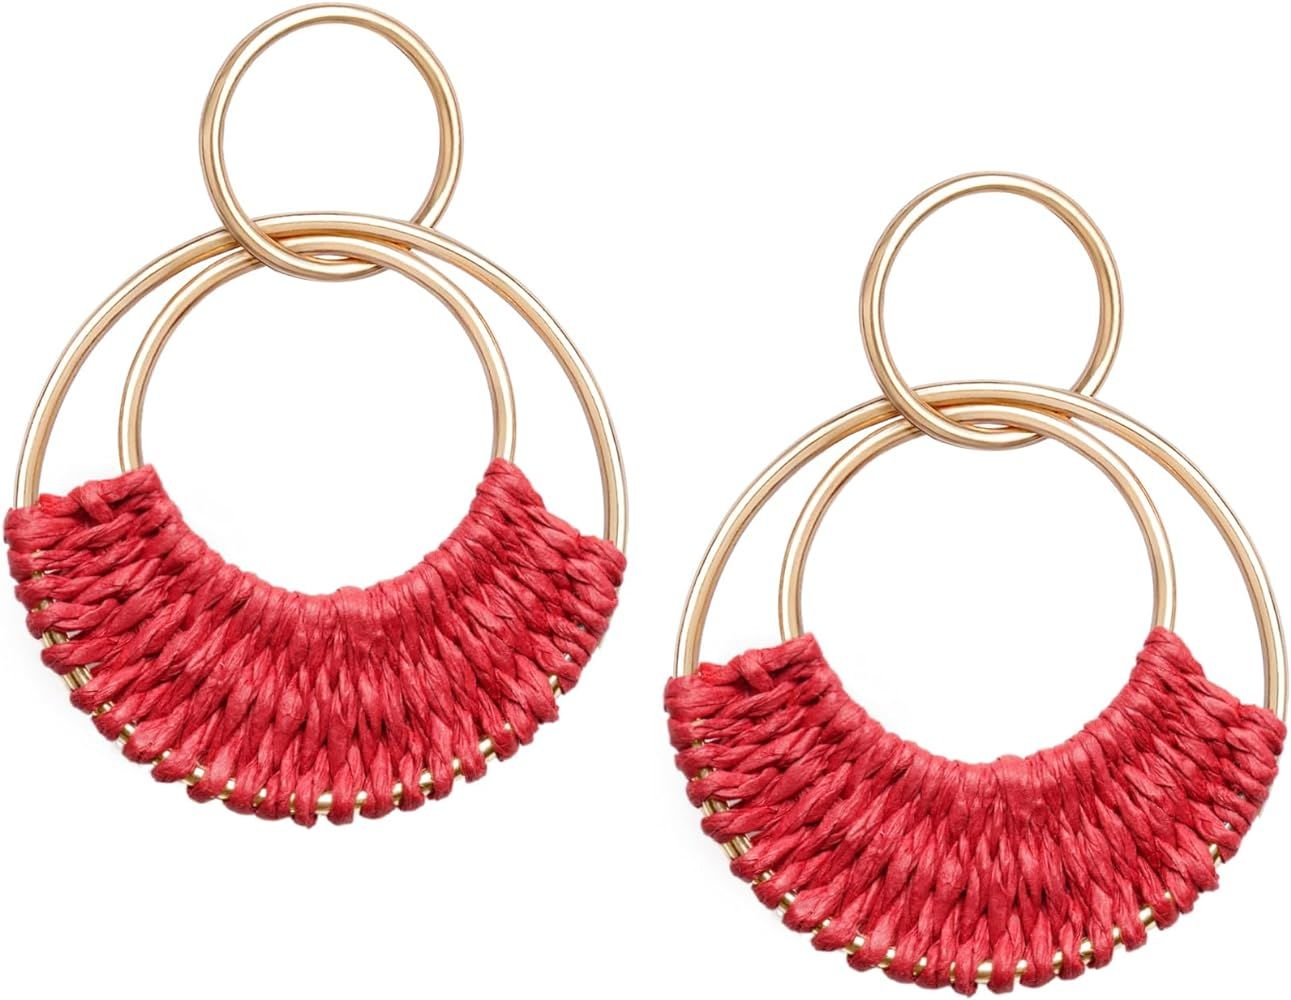 Raffia Hoop Earrings for Women Girls Fun Boho Summer Beach Earrings Lightweight Handmade Straw Wi... | Amazon (US)